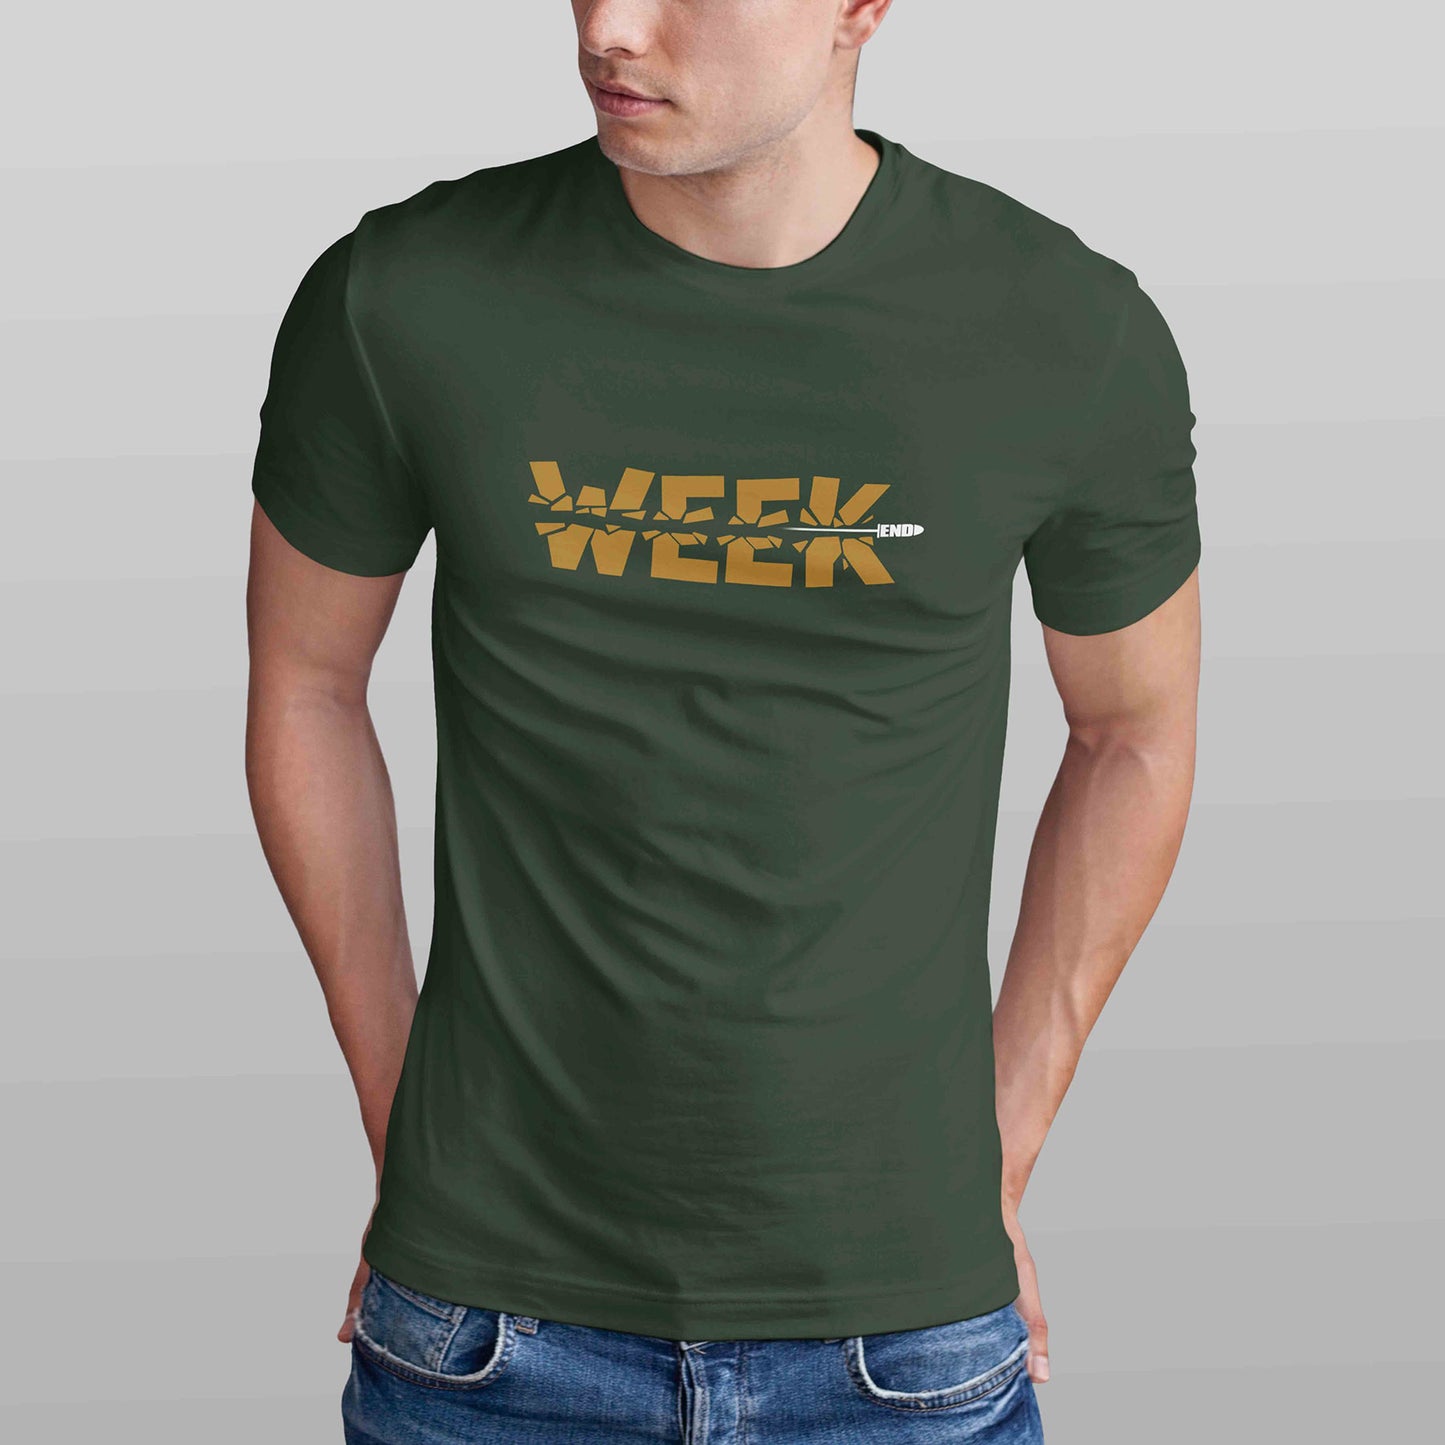 Week End Men's T-shirt